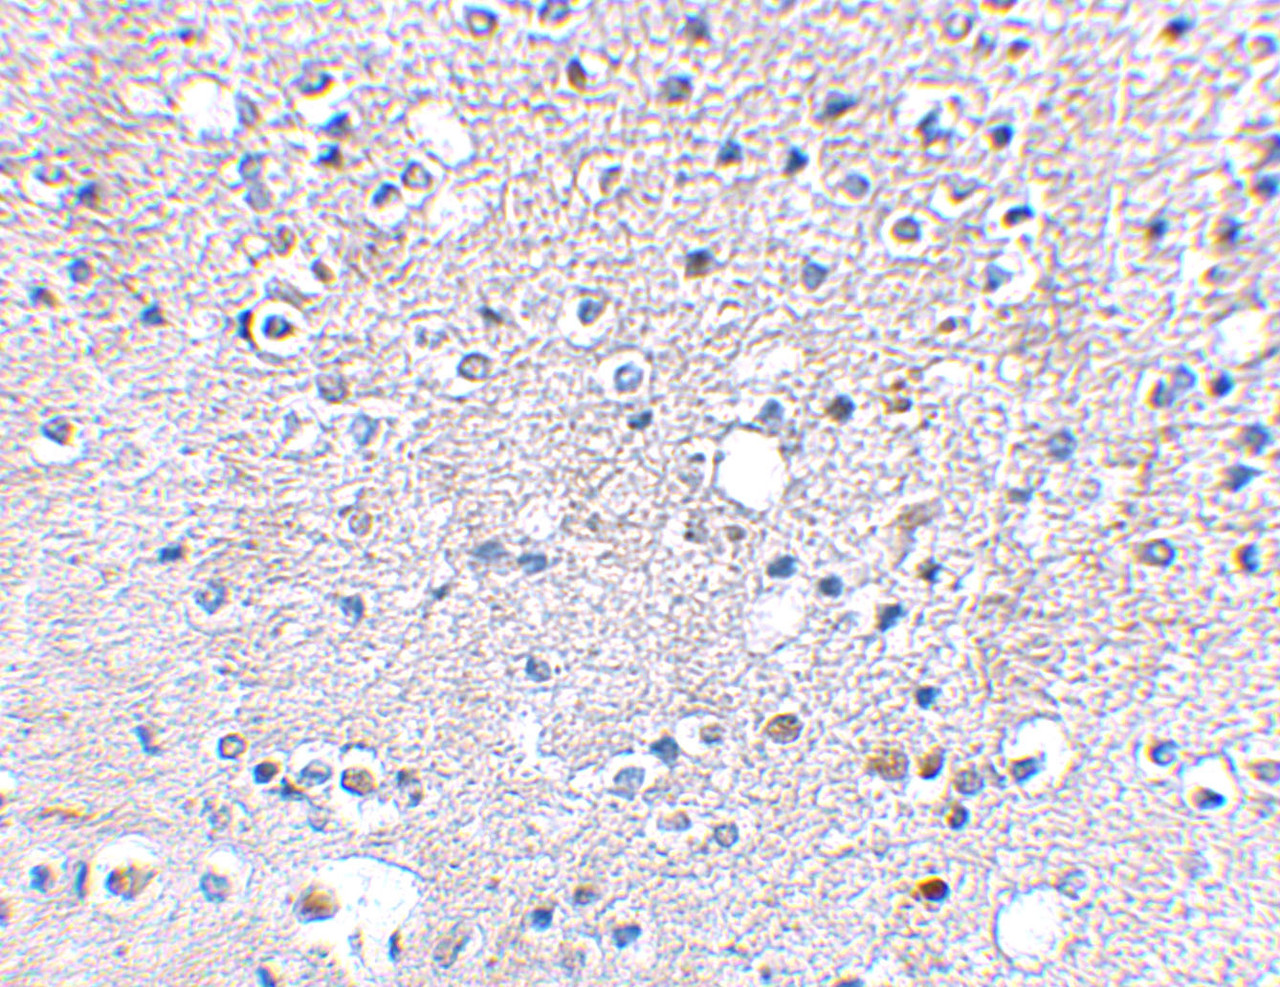 Immunohistochemical staining of human brain tissue using Grik5 antibody at 2.5 ug/mL.